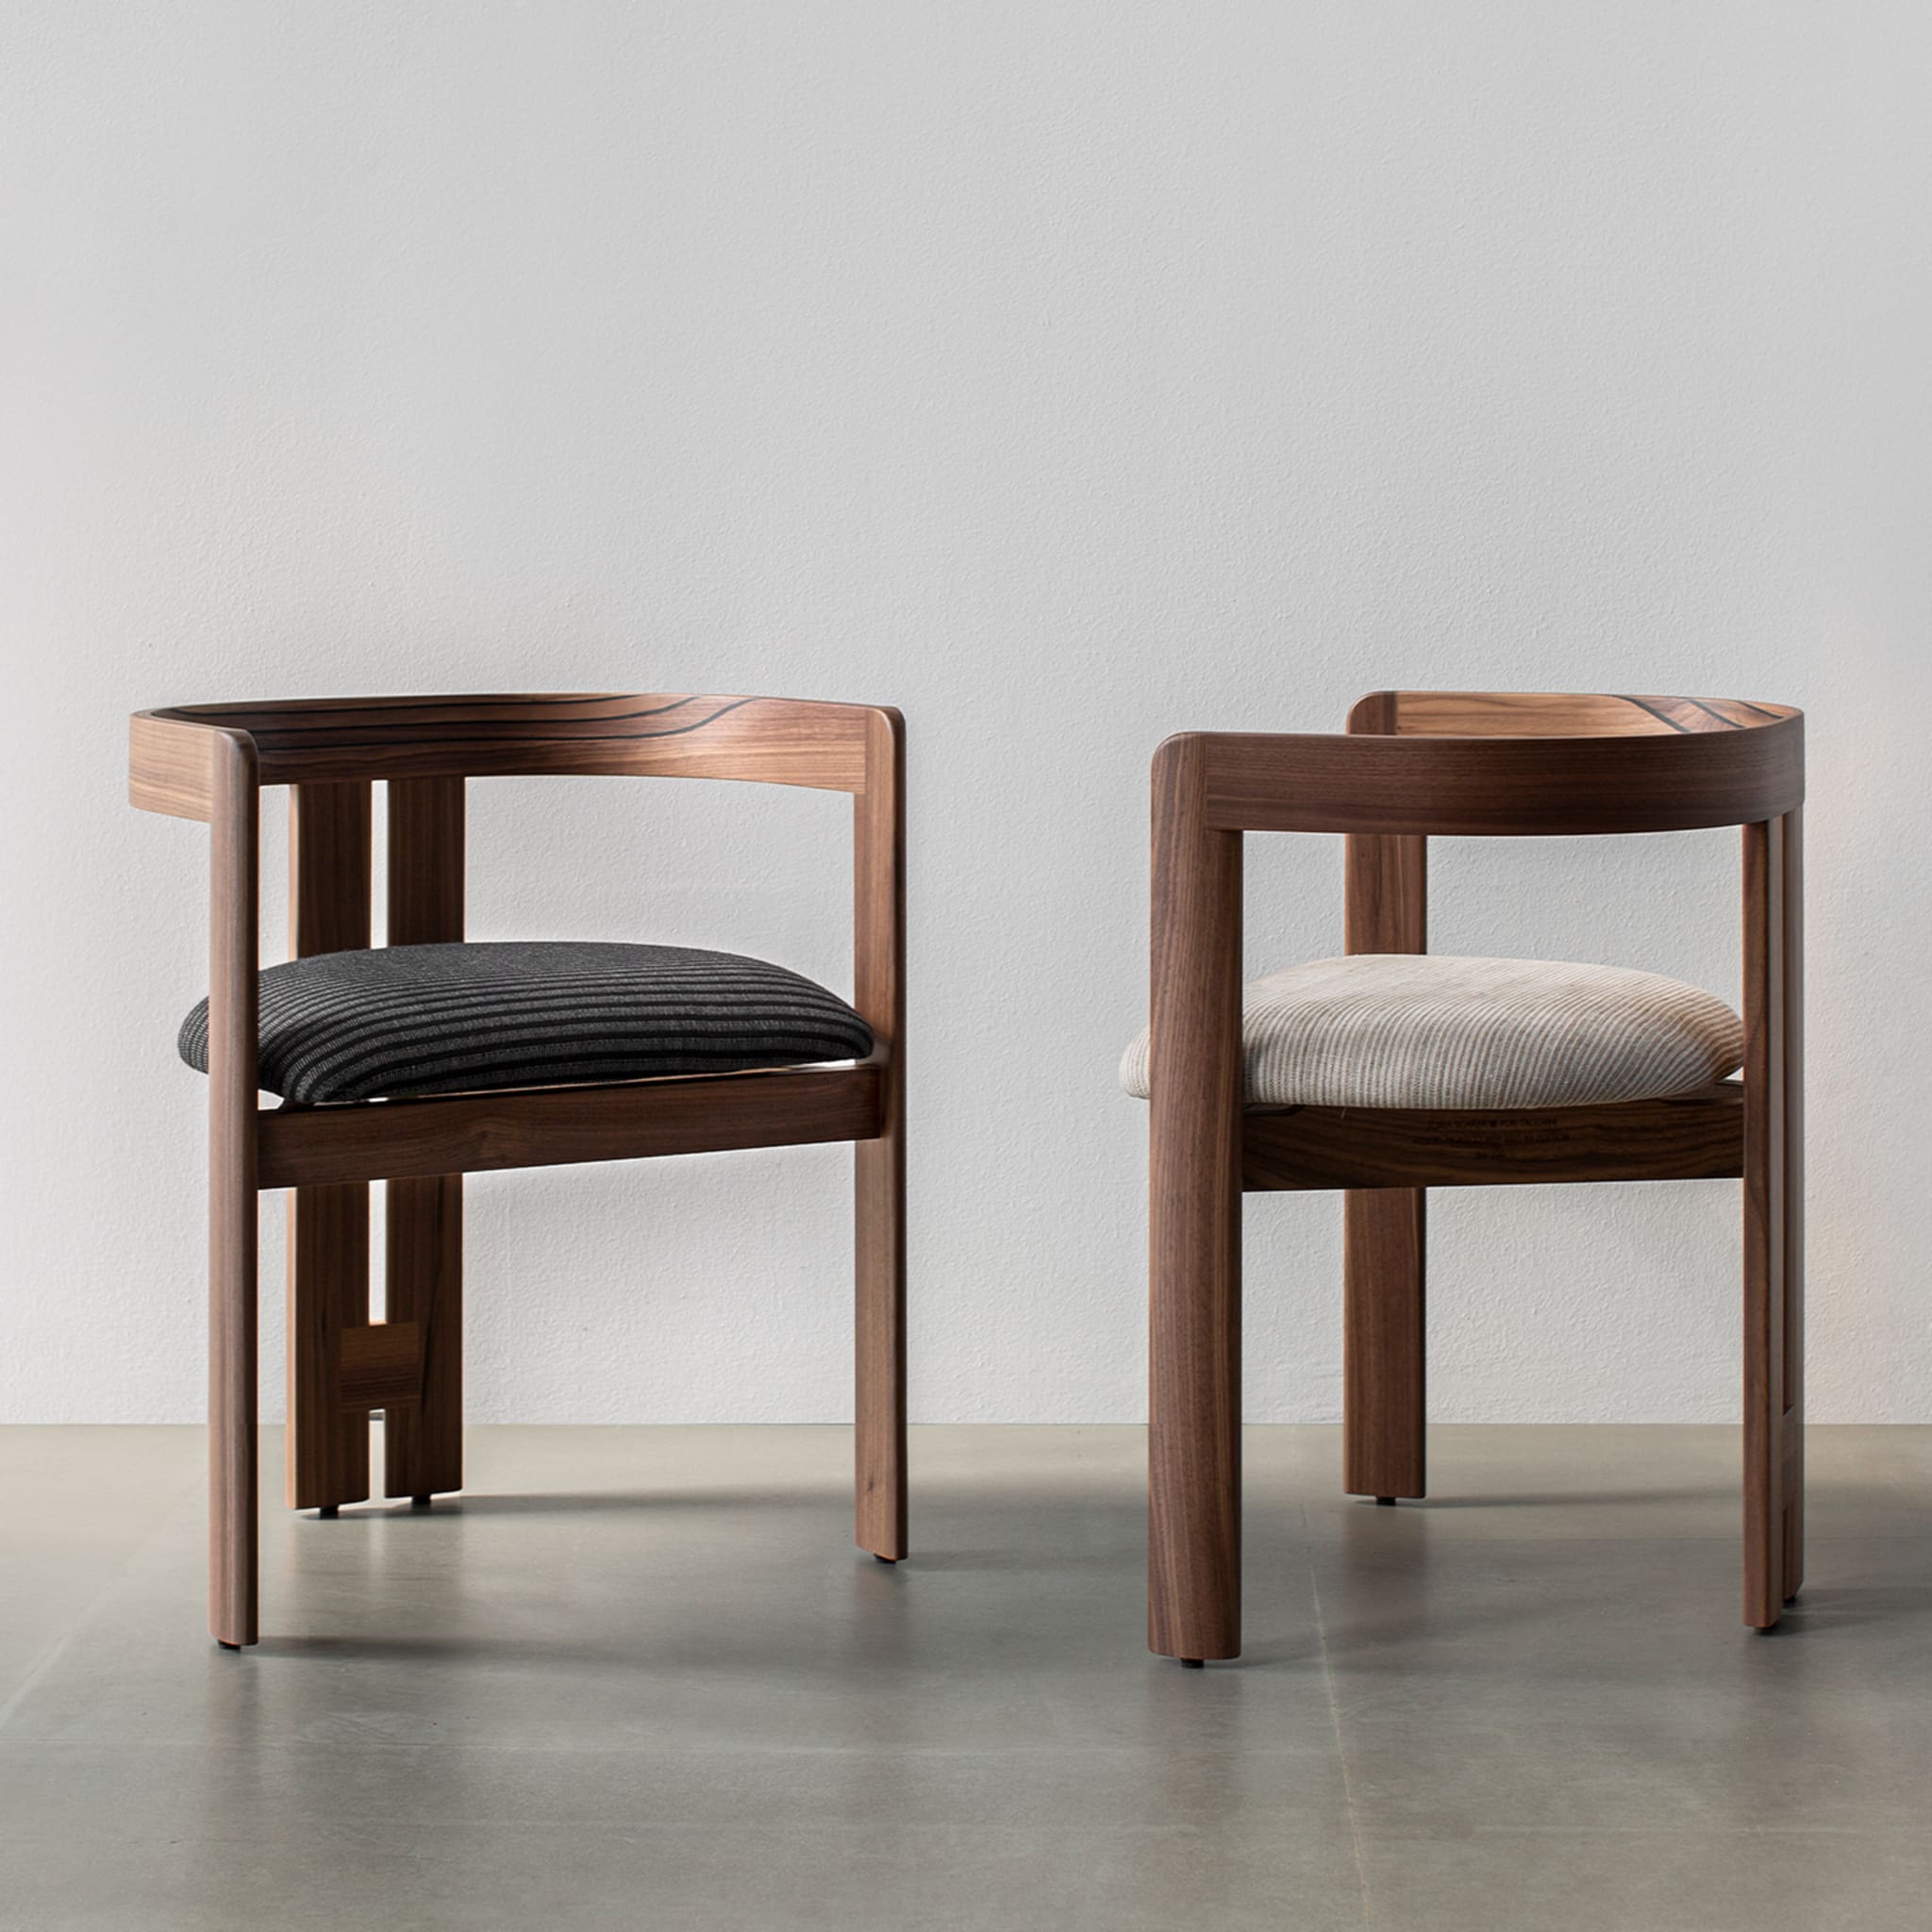 Pigreco Walnut Chair by Tobia Scarpa - Alternative view 1